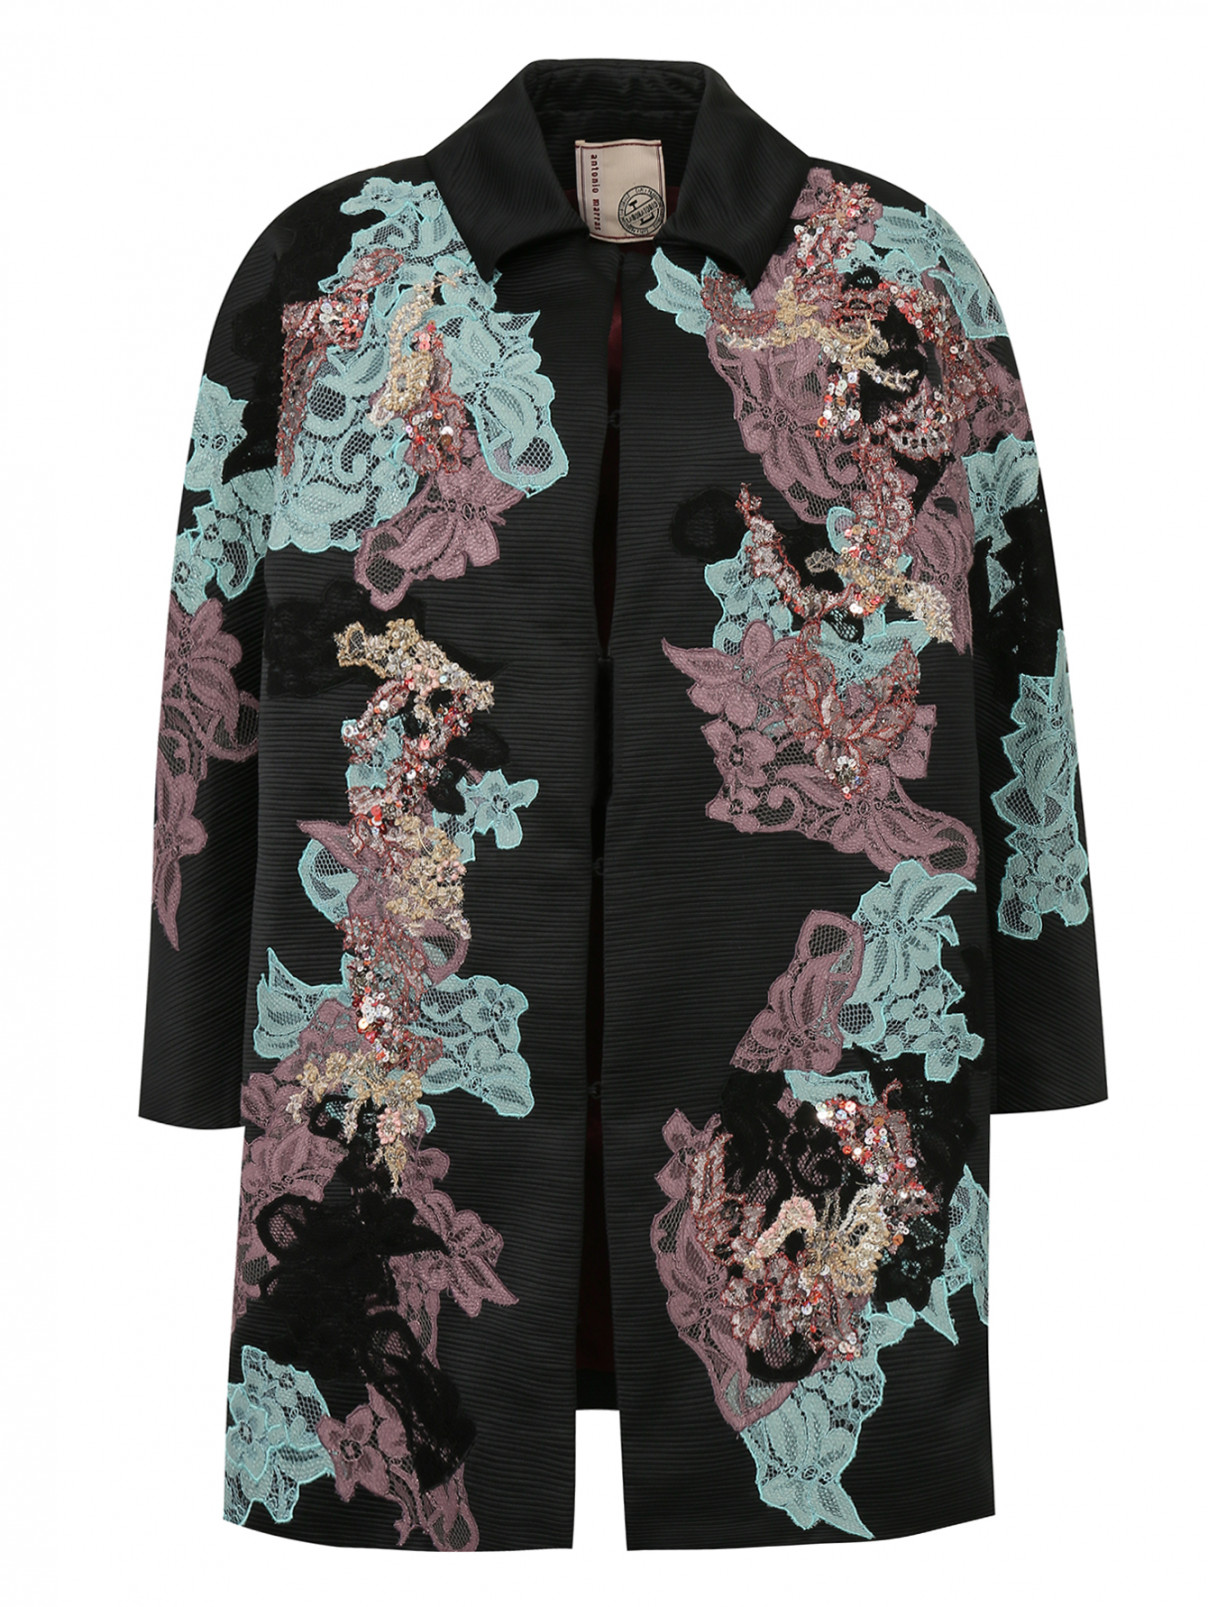 Однобортное пальто декорированное кружевом и пайетками Antonio Marras  –  Общий вид  – Цвет:  Черный